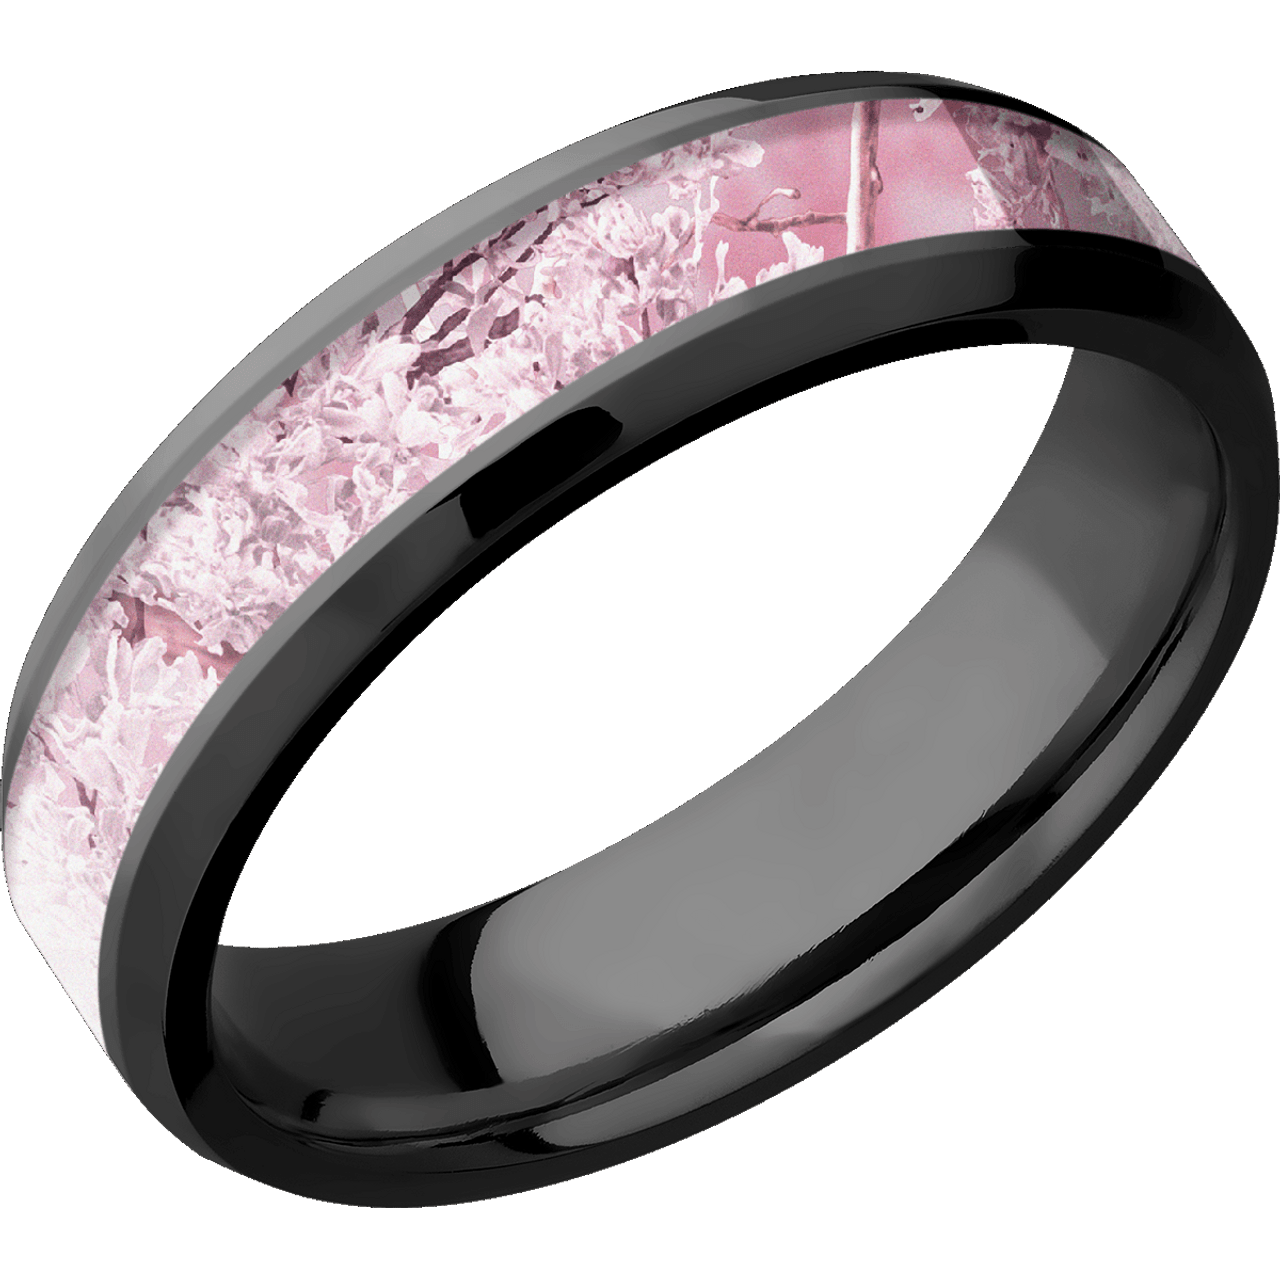 Thin Black Zirconium Camo Ring | Free Shipping | CAMOKIX